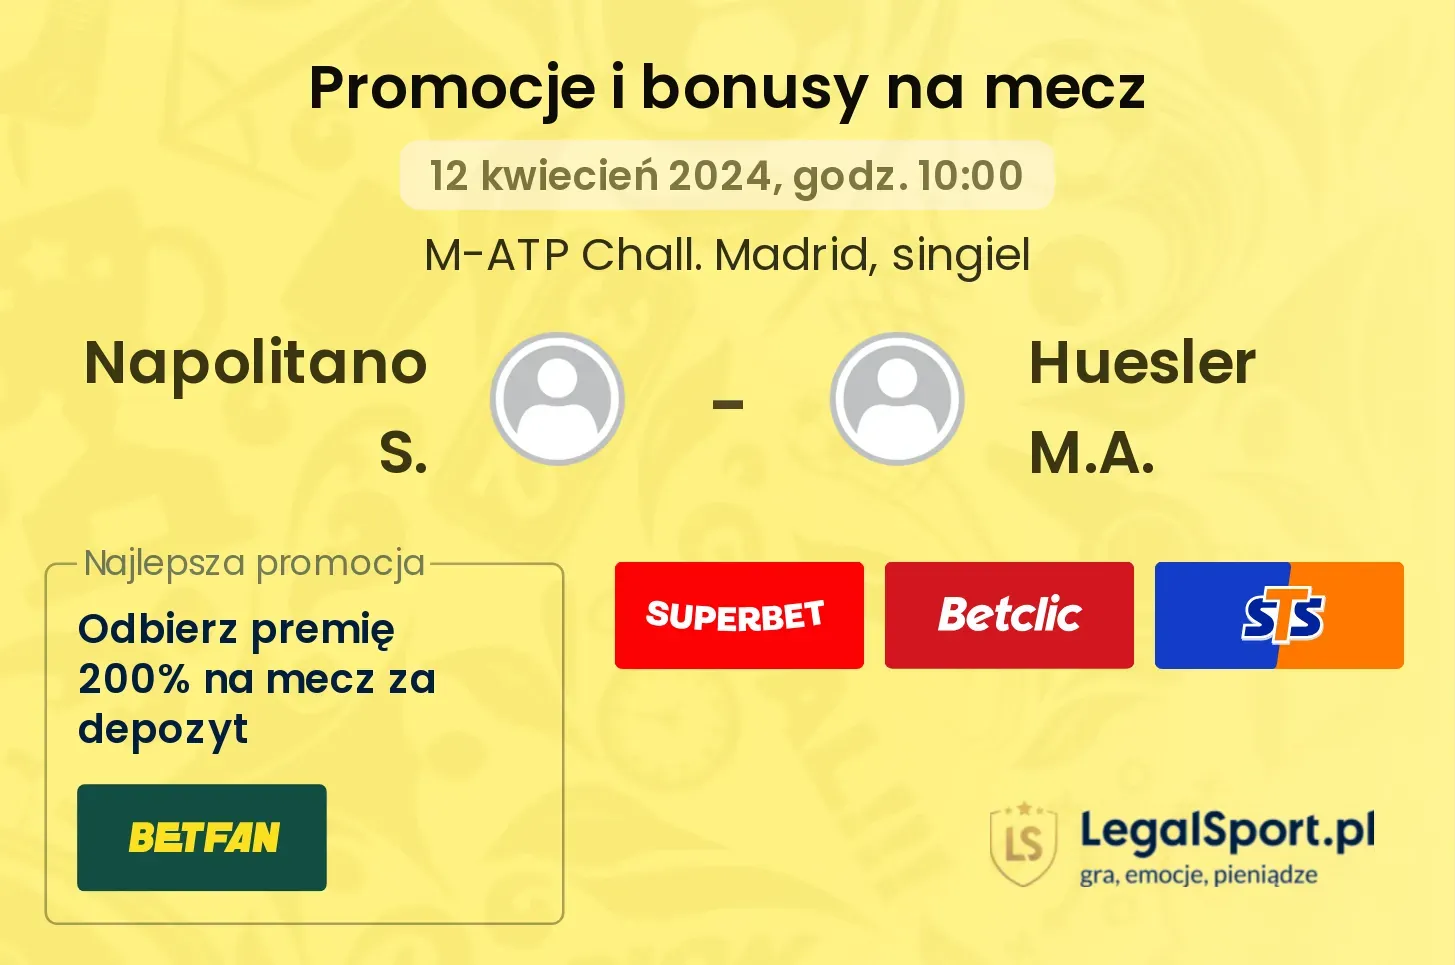 Napolitano S. - Huesler M.A. promocje bonusy na mecz